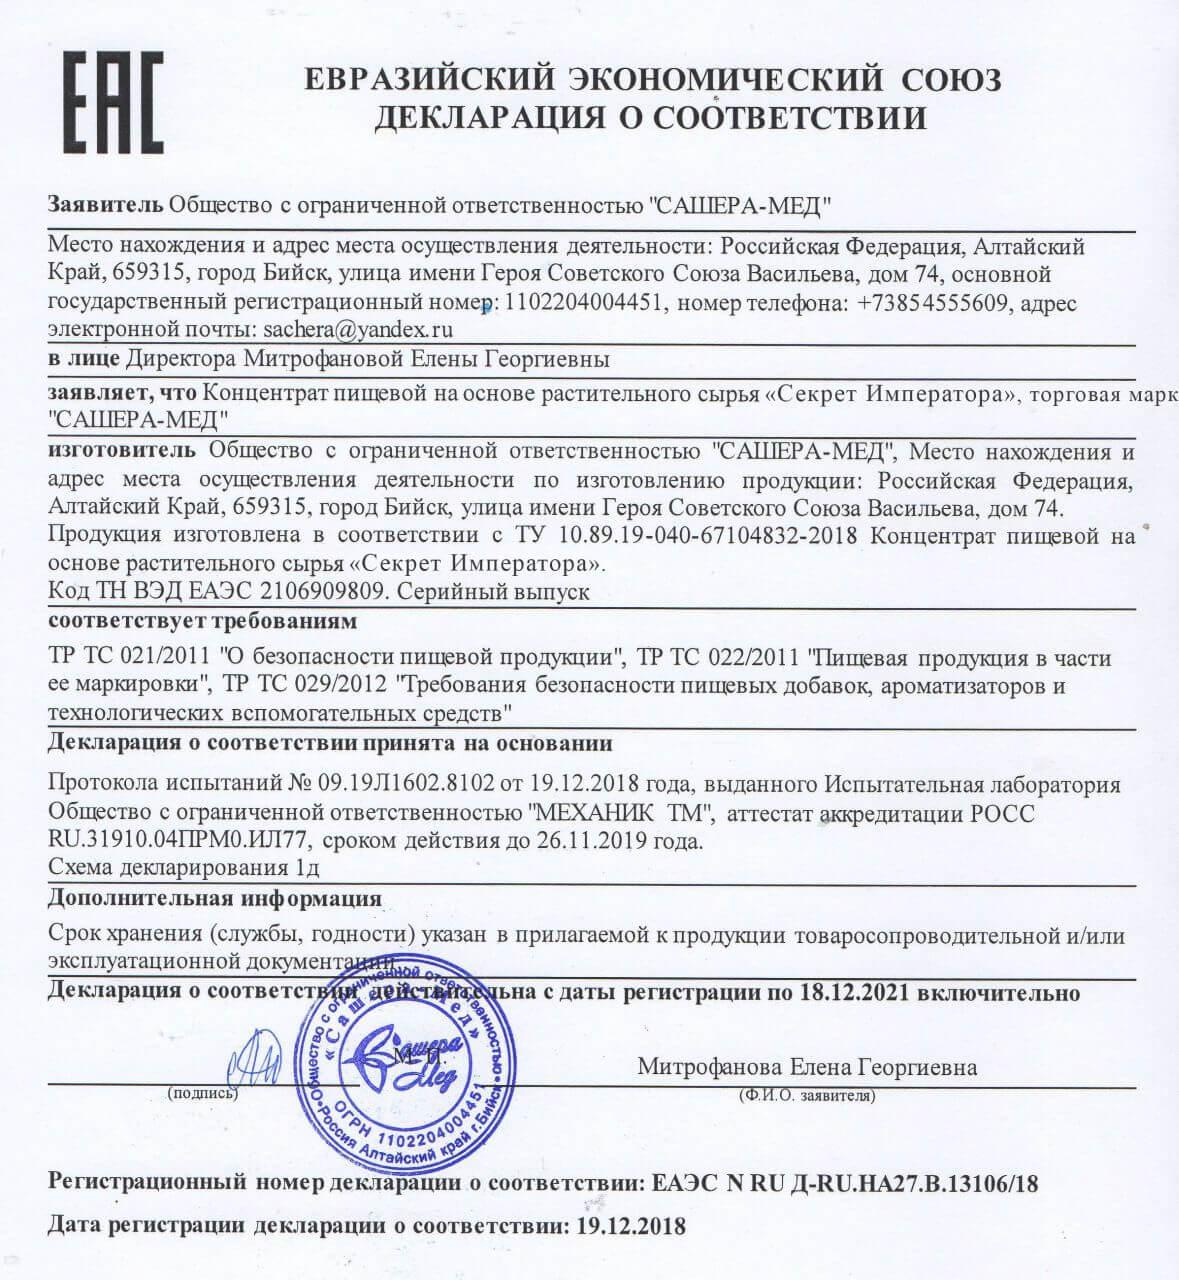 Сертификат на секрет императора в Санкт-Петербурге